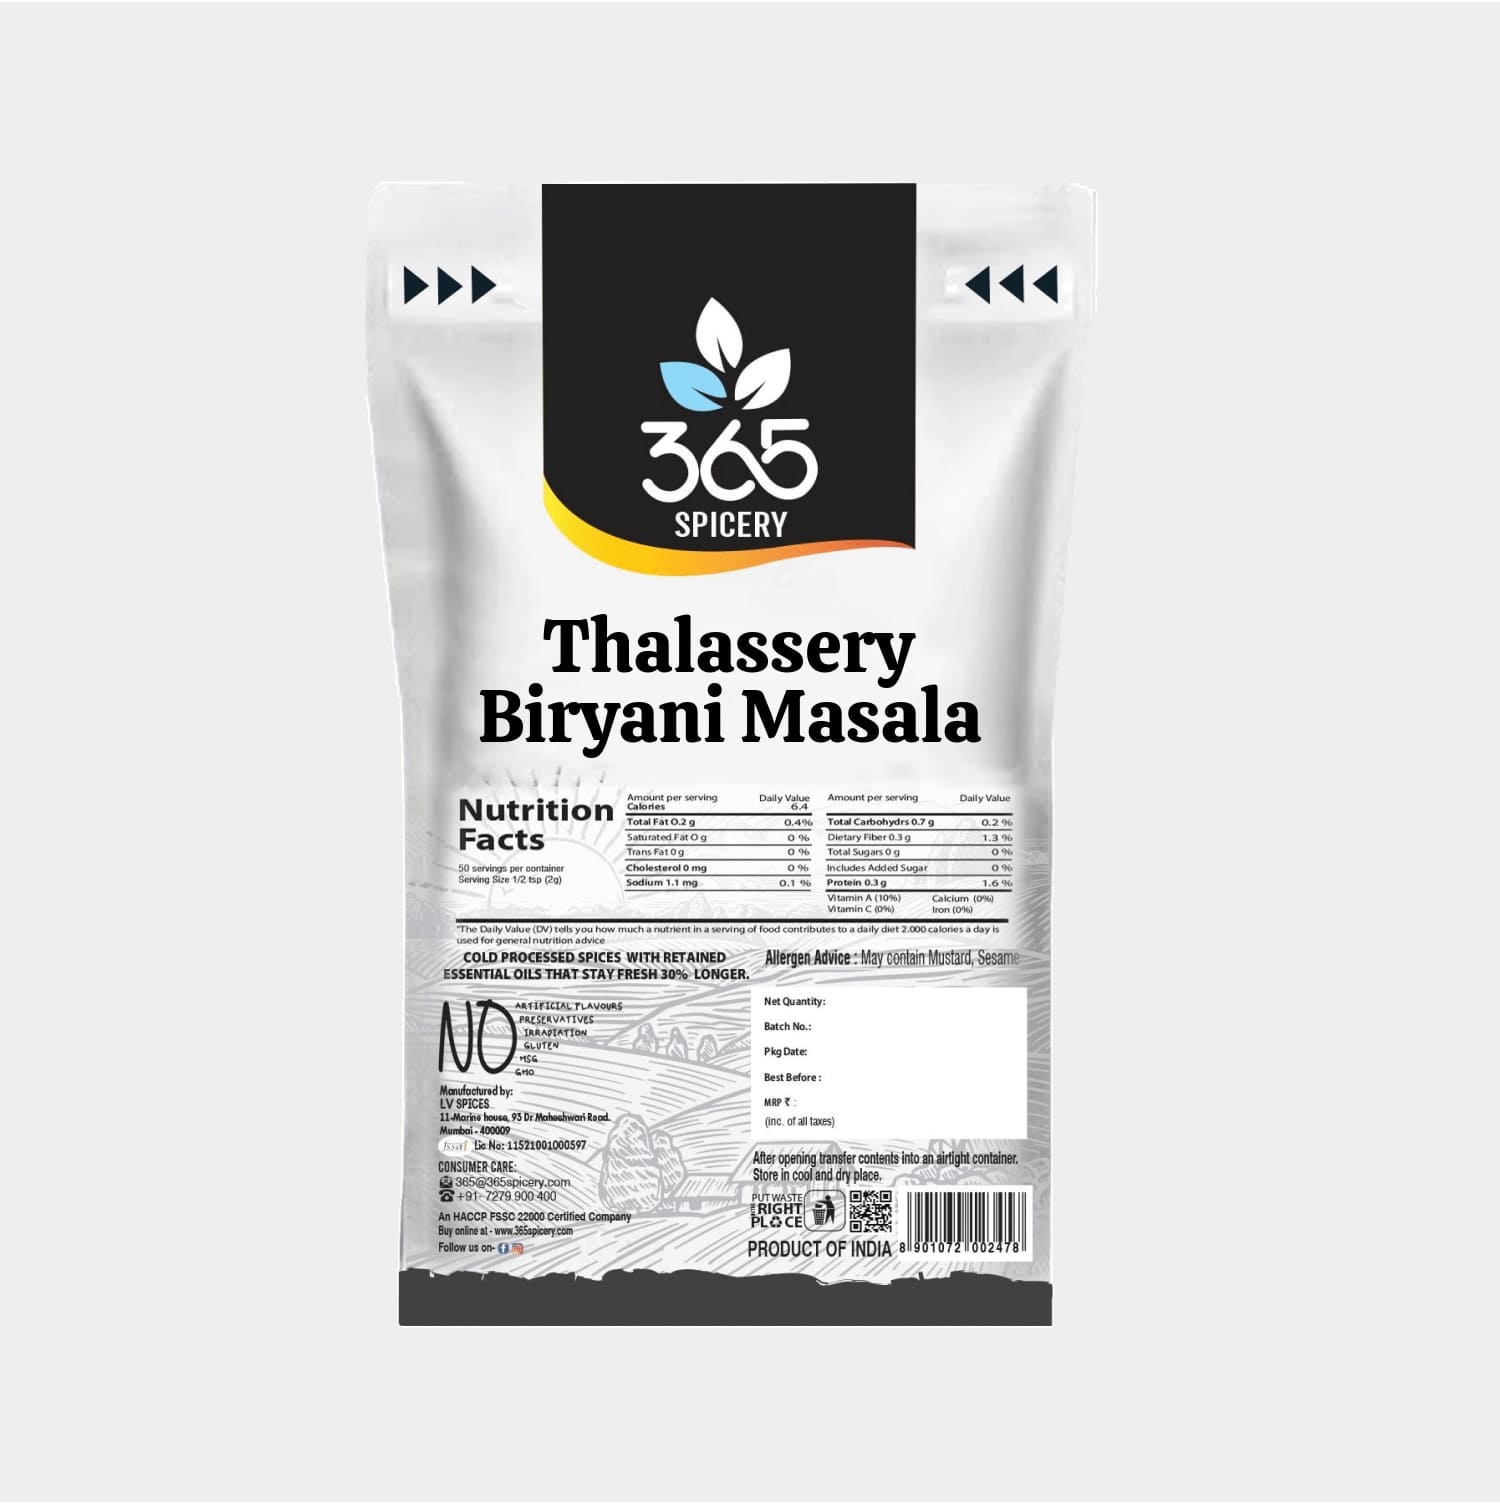 Thalassery Biryani Masala